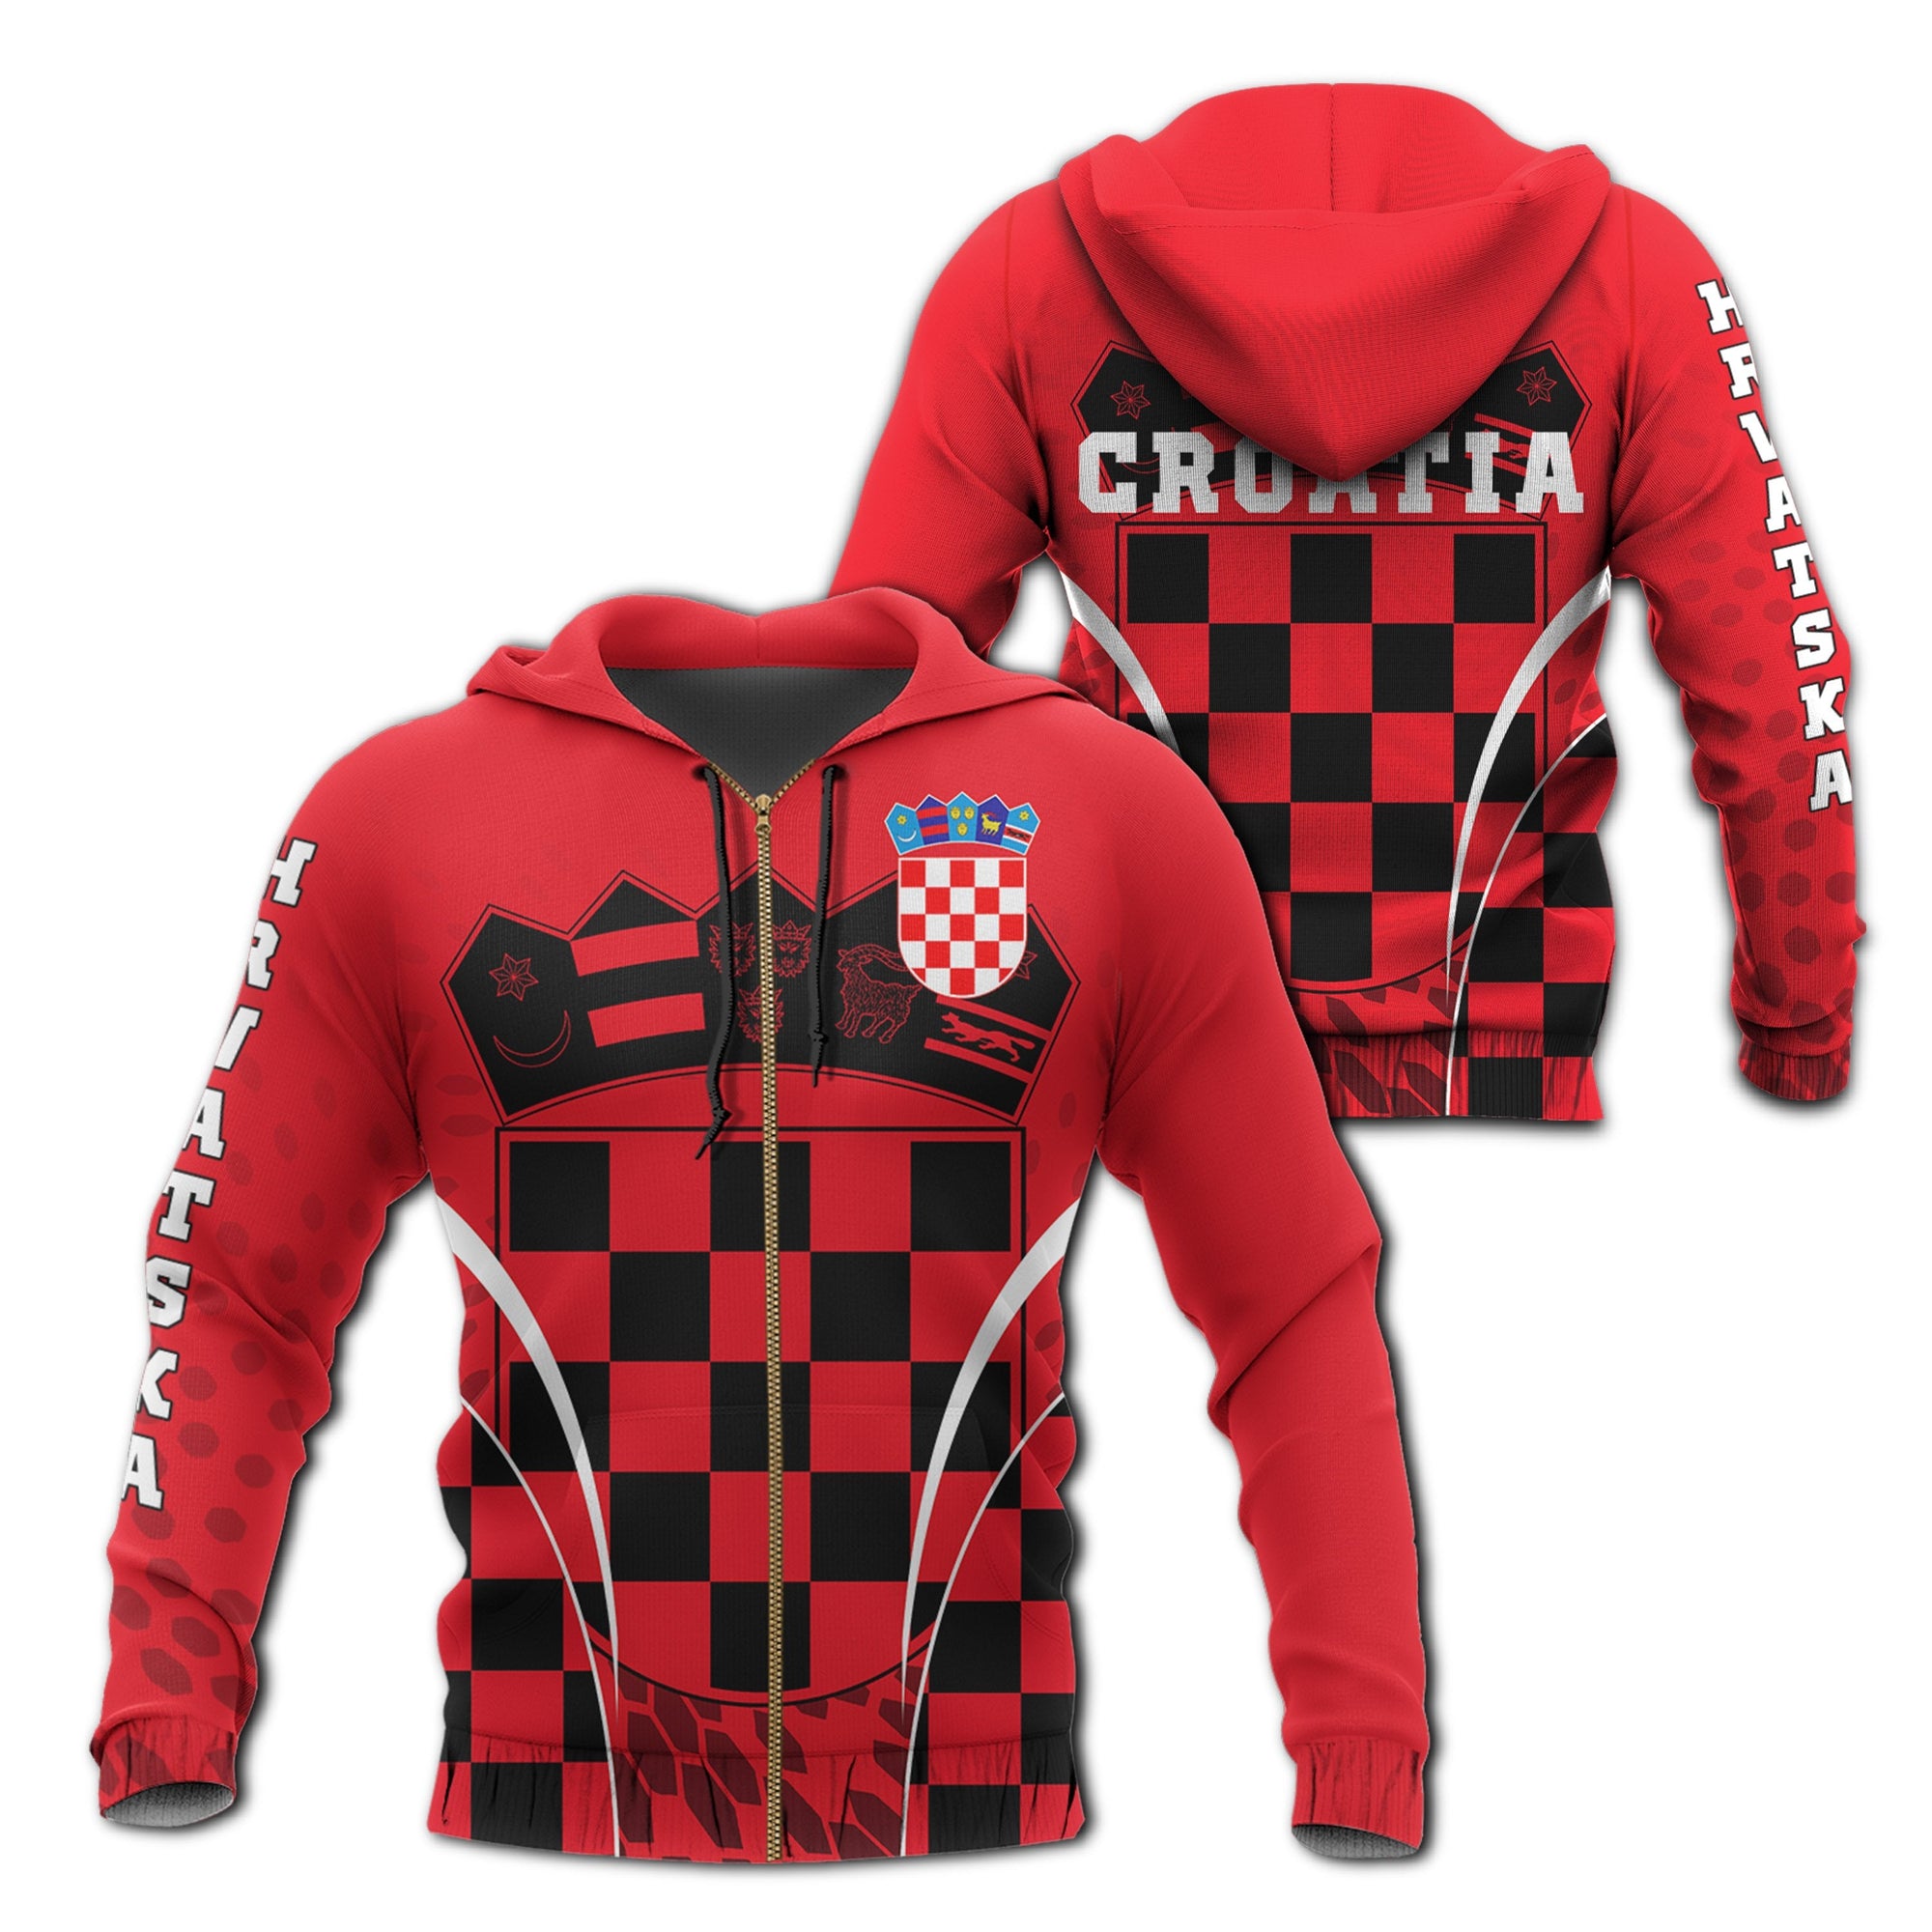 croatia-zipper-hoodie-robust-style